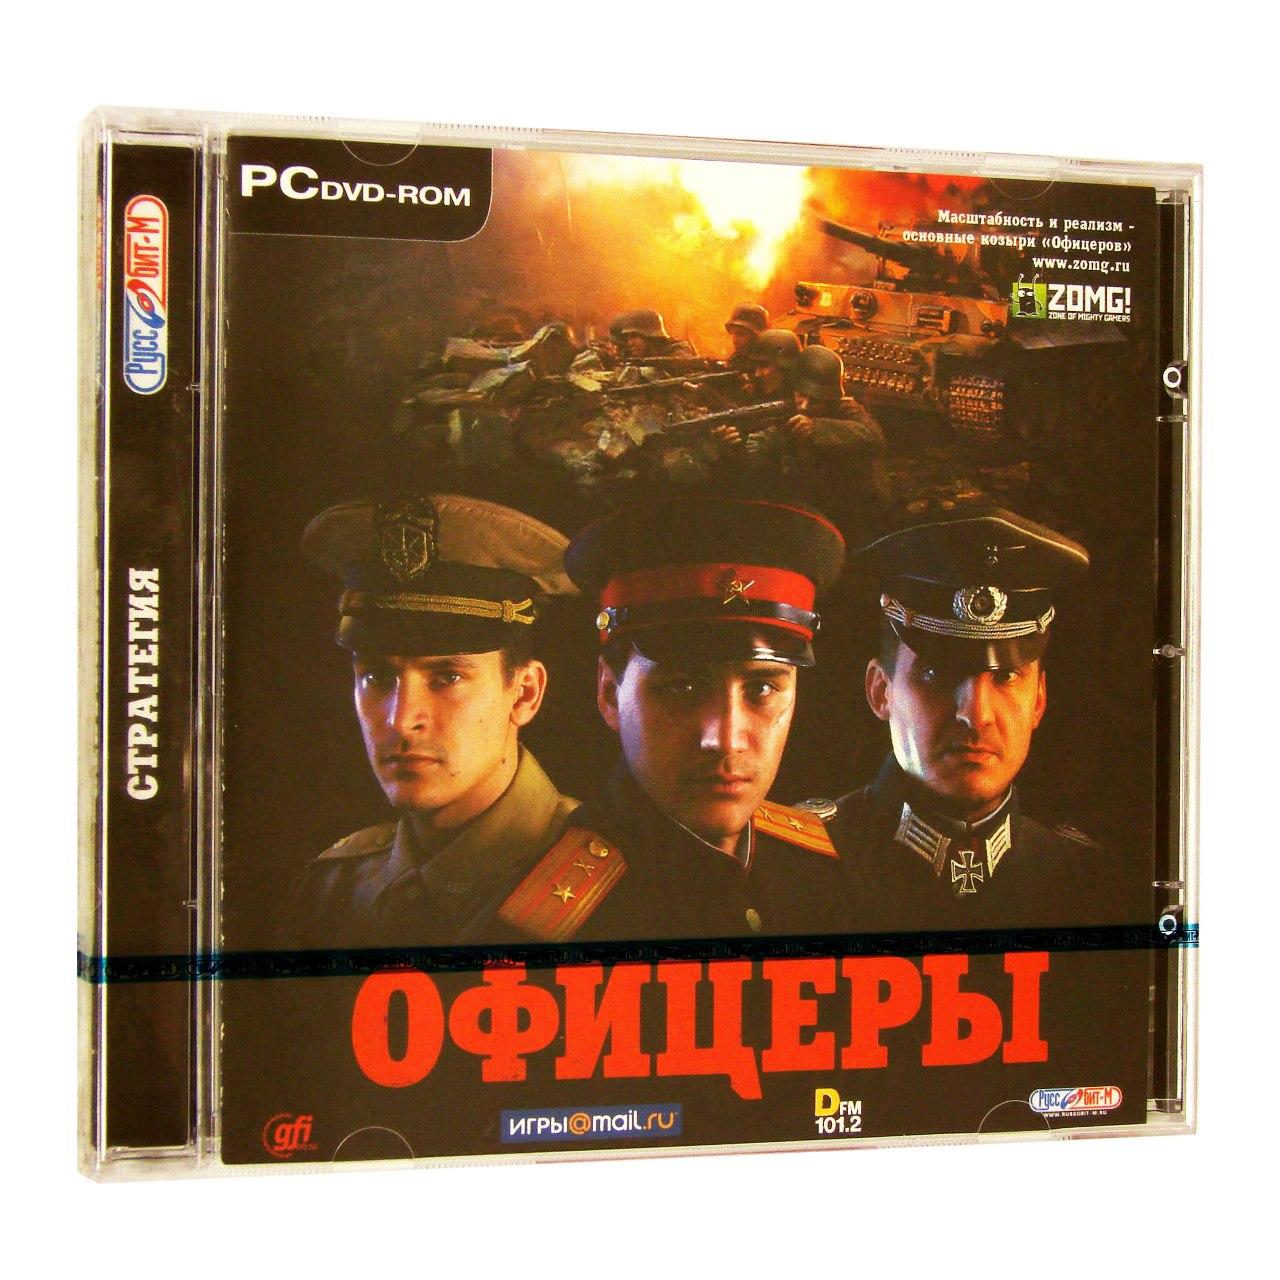 Компьютерный компакт-диск Офицеры (ПК), фирма "Руссобит-М", 1DVD